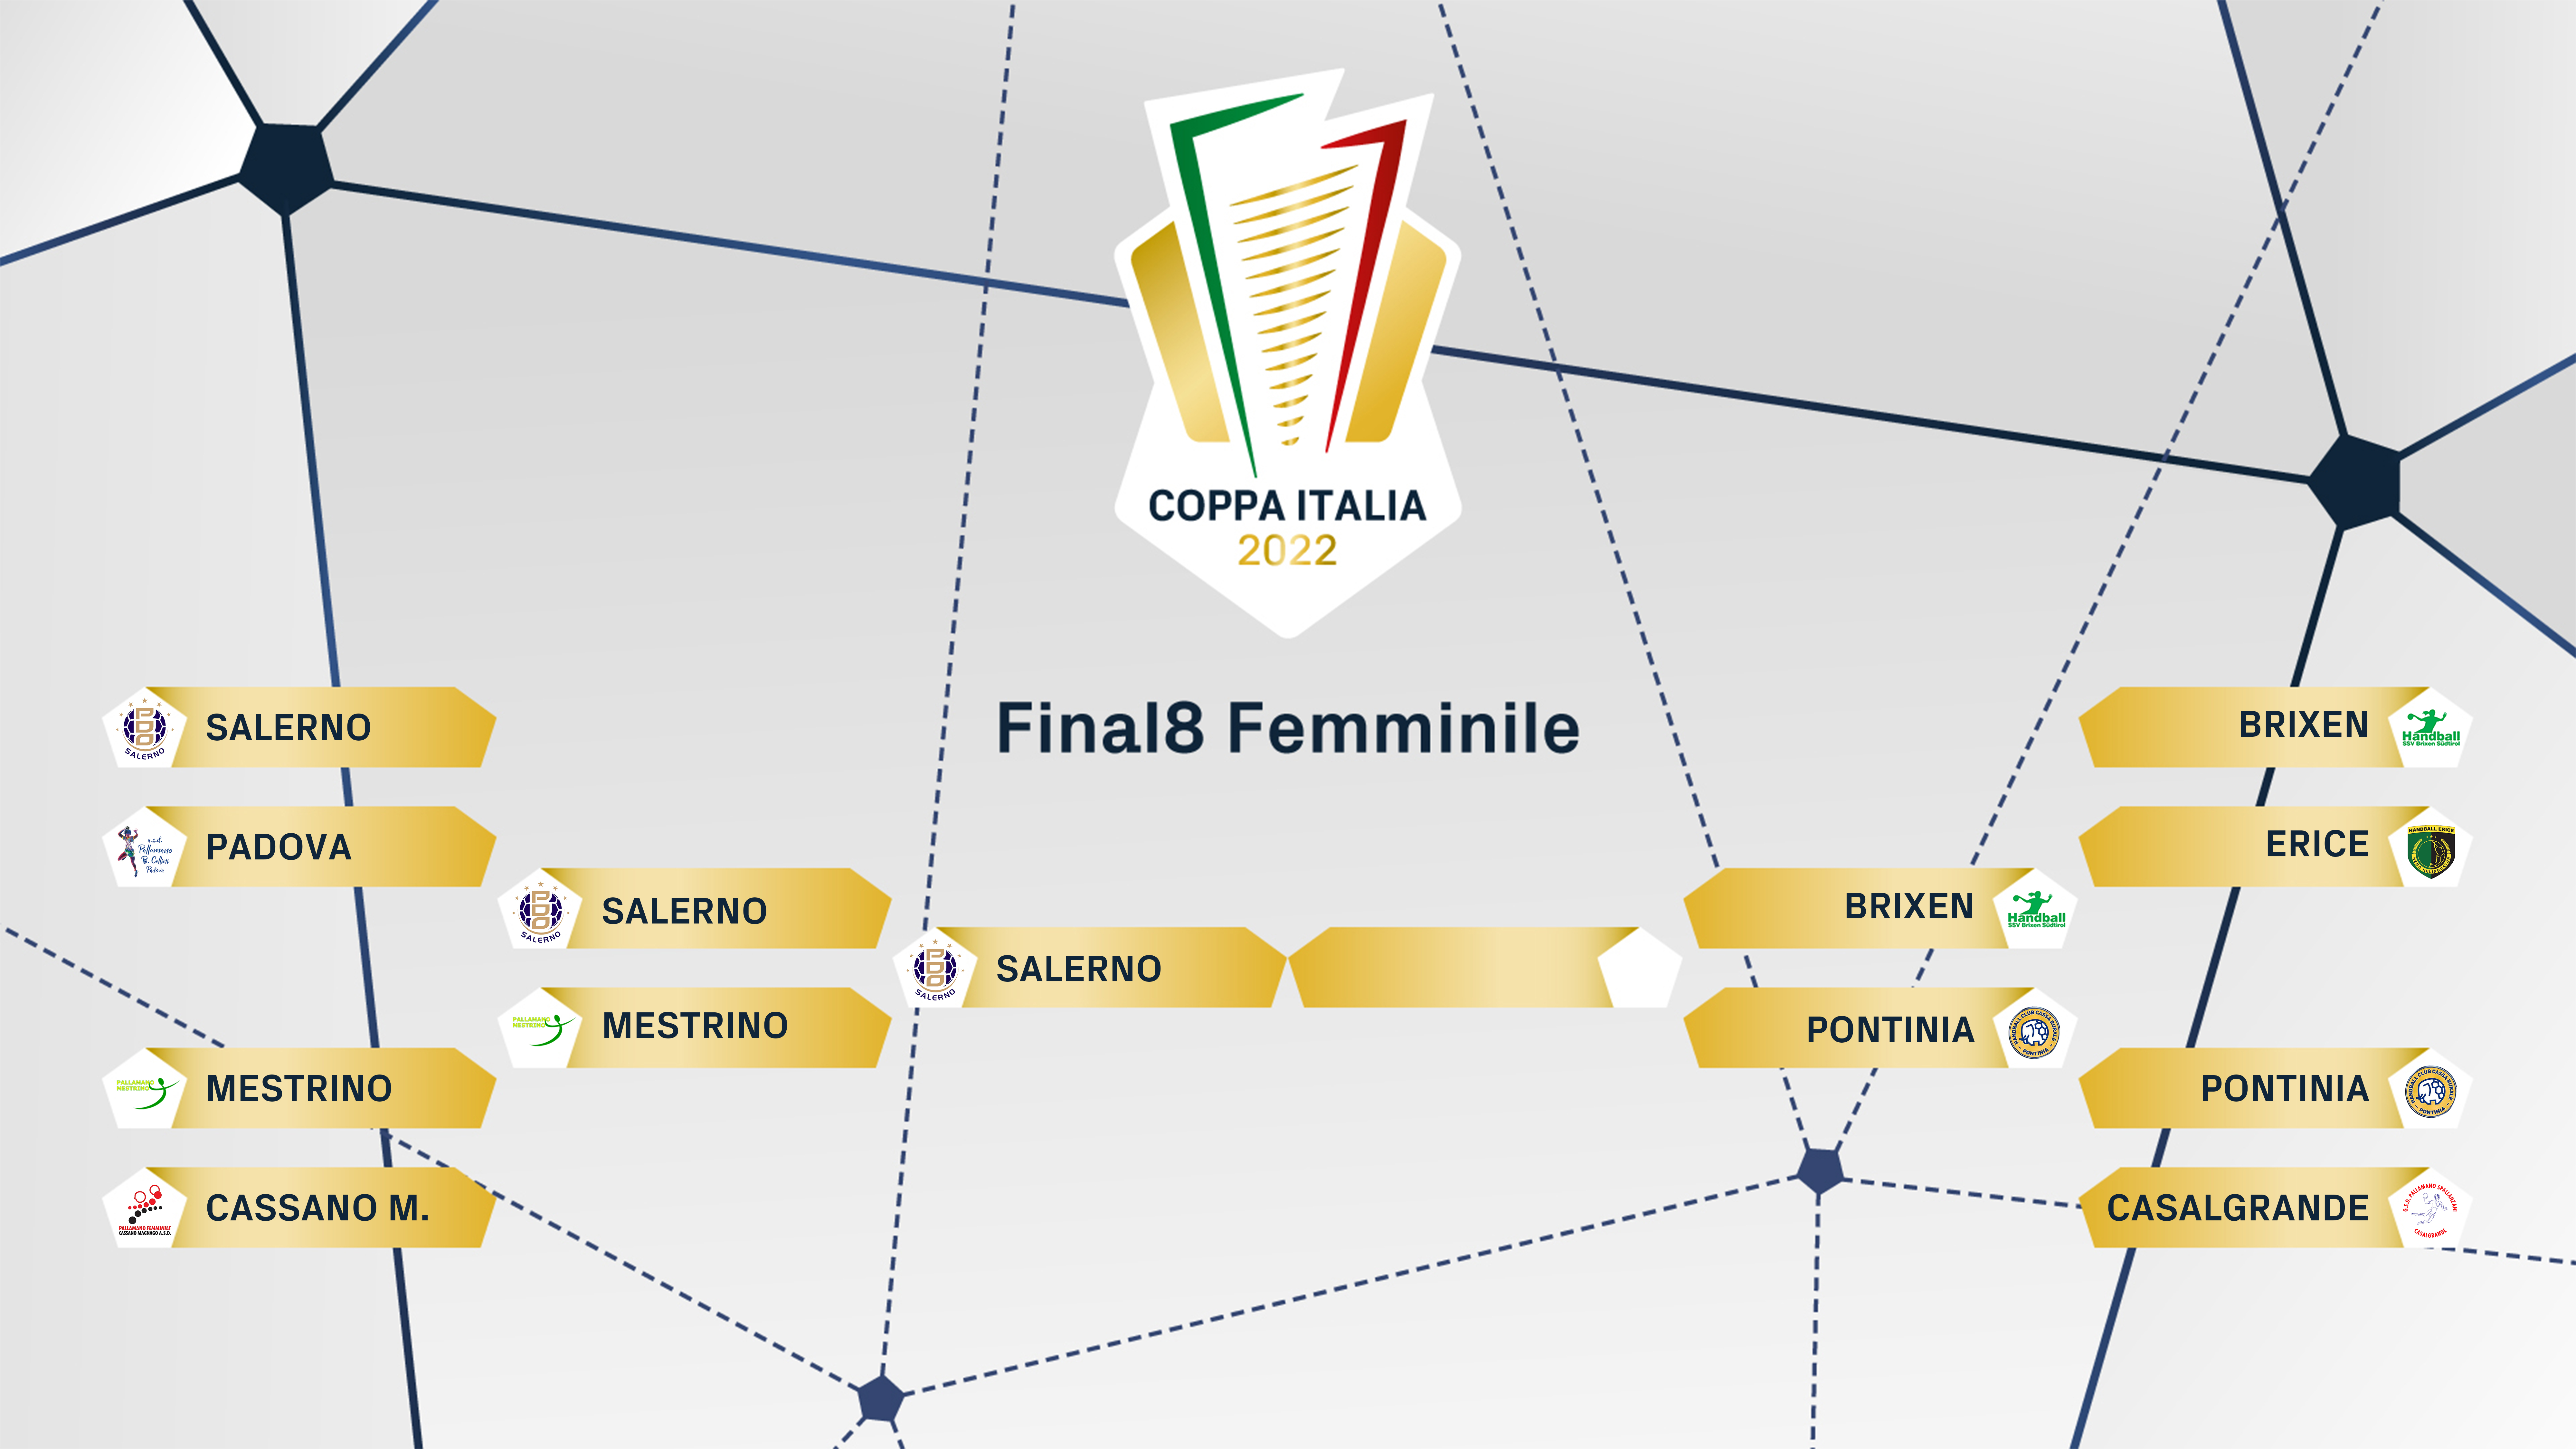 FIGH Coppa Italia tabelloni finale